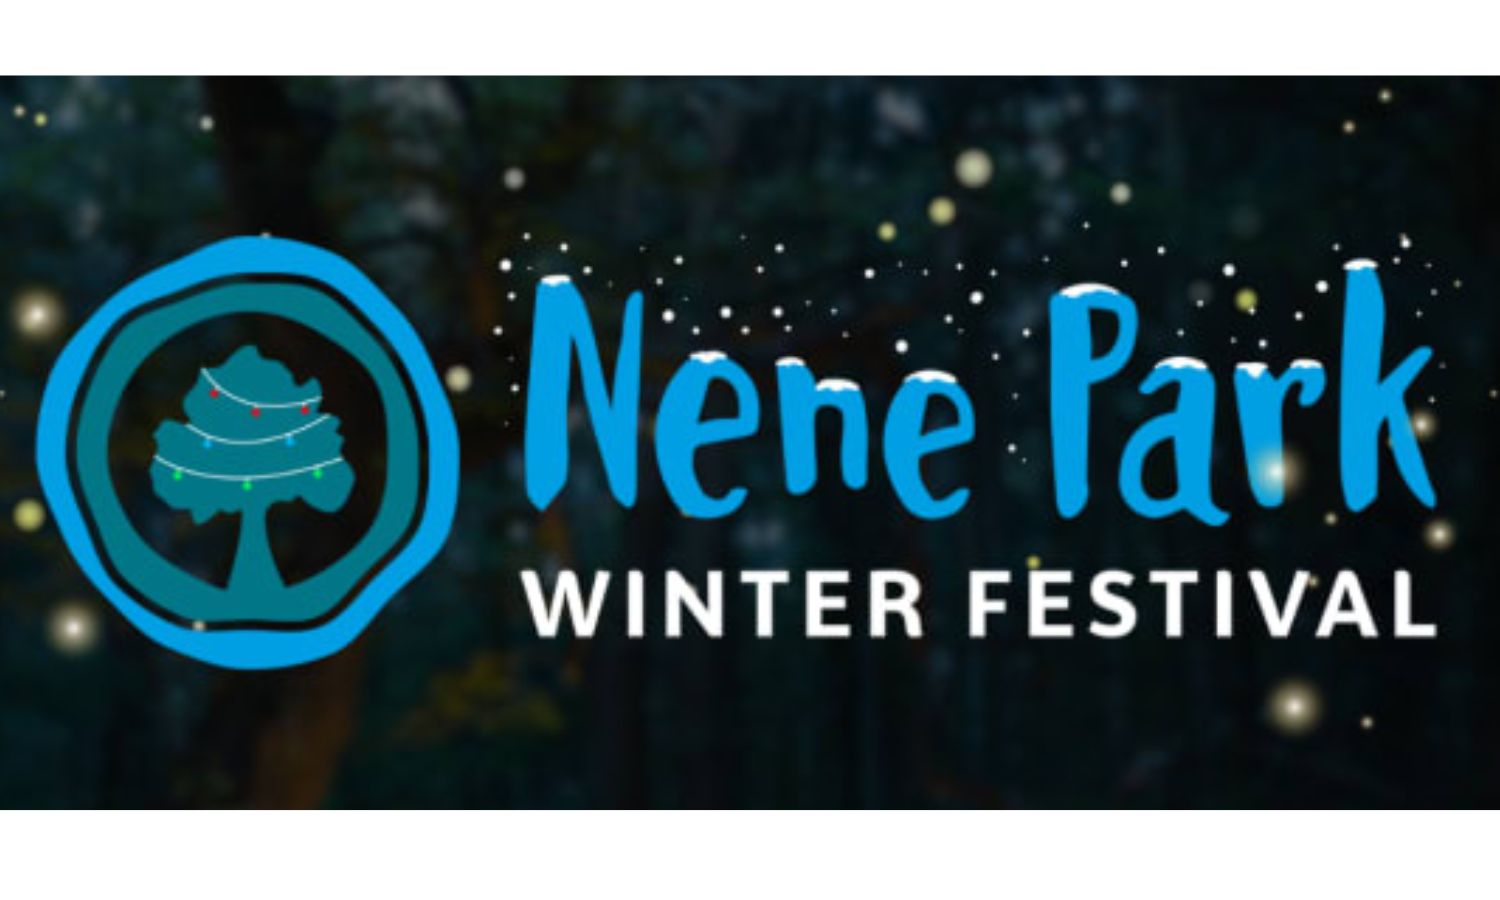 Nene Park Winter Festival